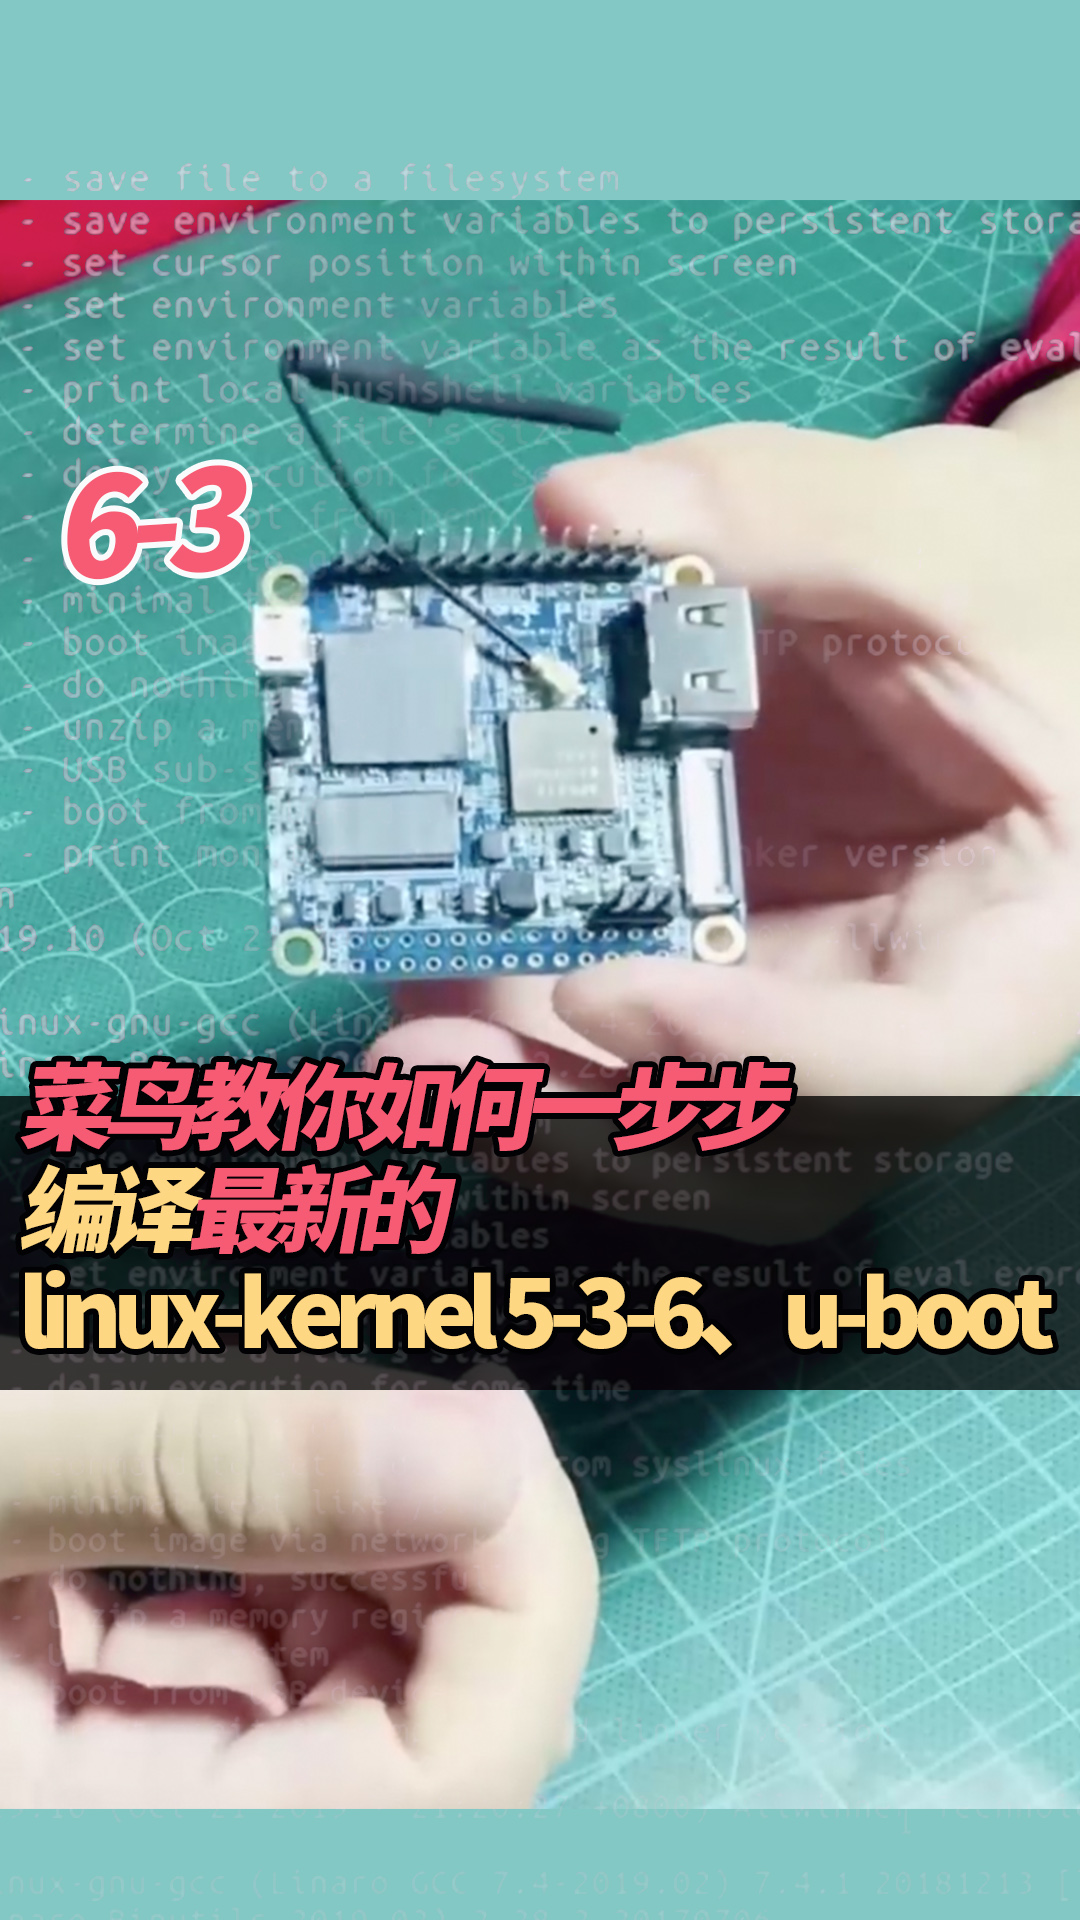 6-3菜鳥教你如何一步步編譯最新的linux-kernel 5-3-6、u-boot#linux 